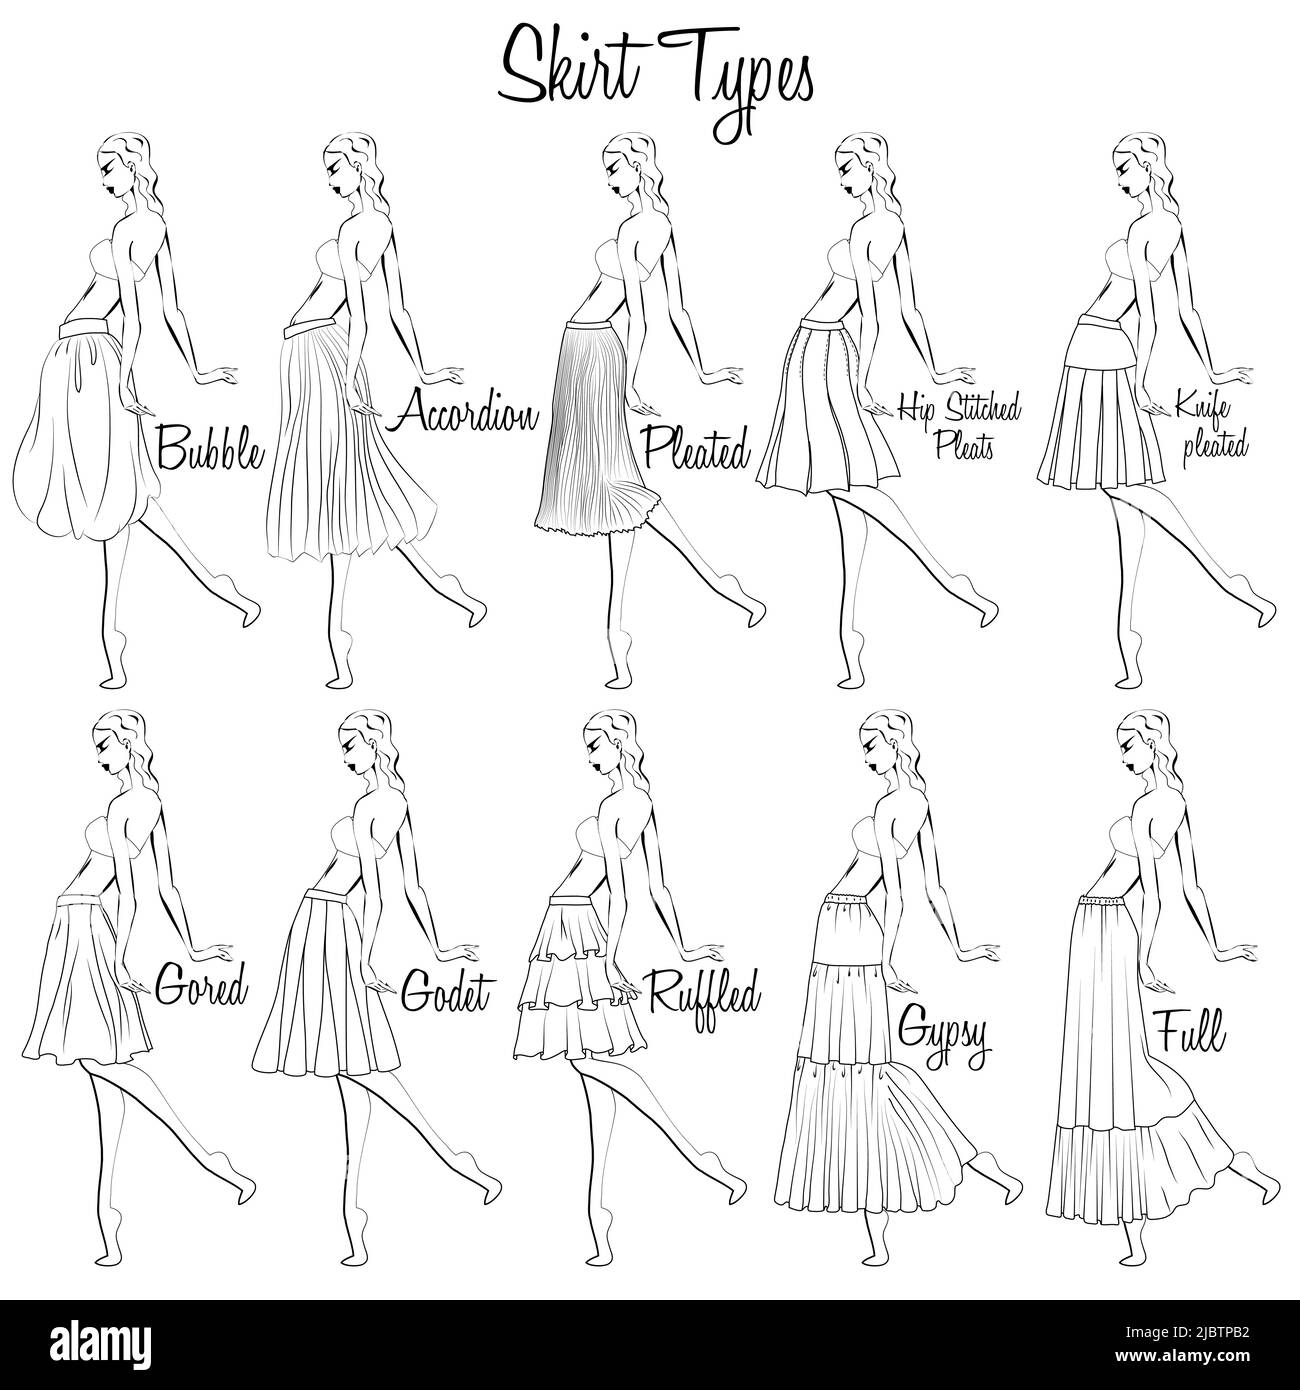 Modèles de jupe. Représentation visuelle des styles des jupes sur la figure. Illustration du design et de la variété des jupes pour femmes. Illustration de Vecteur